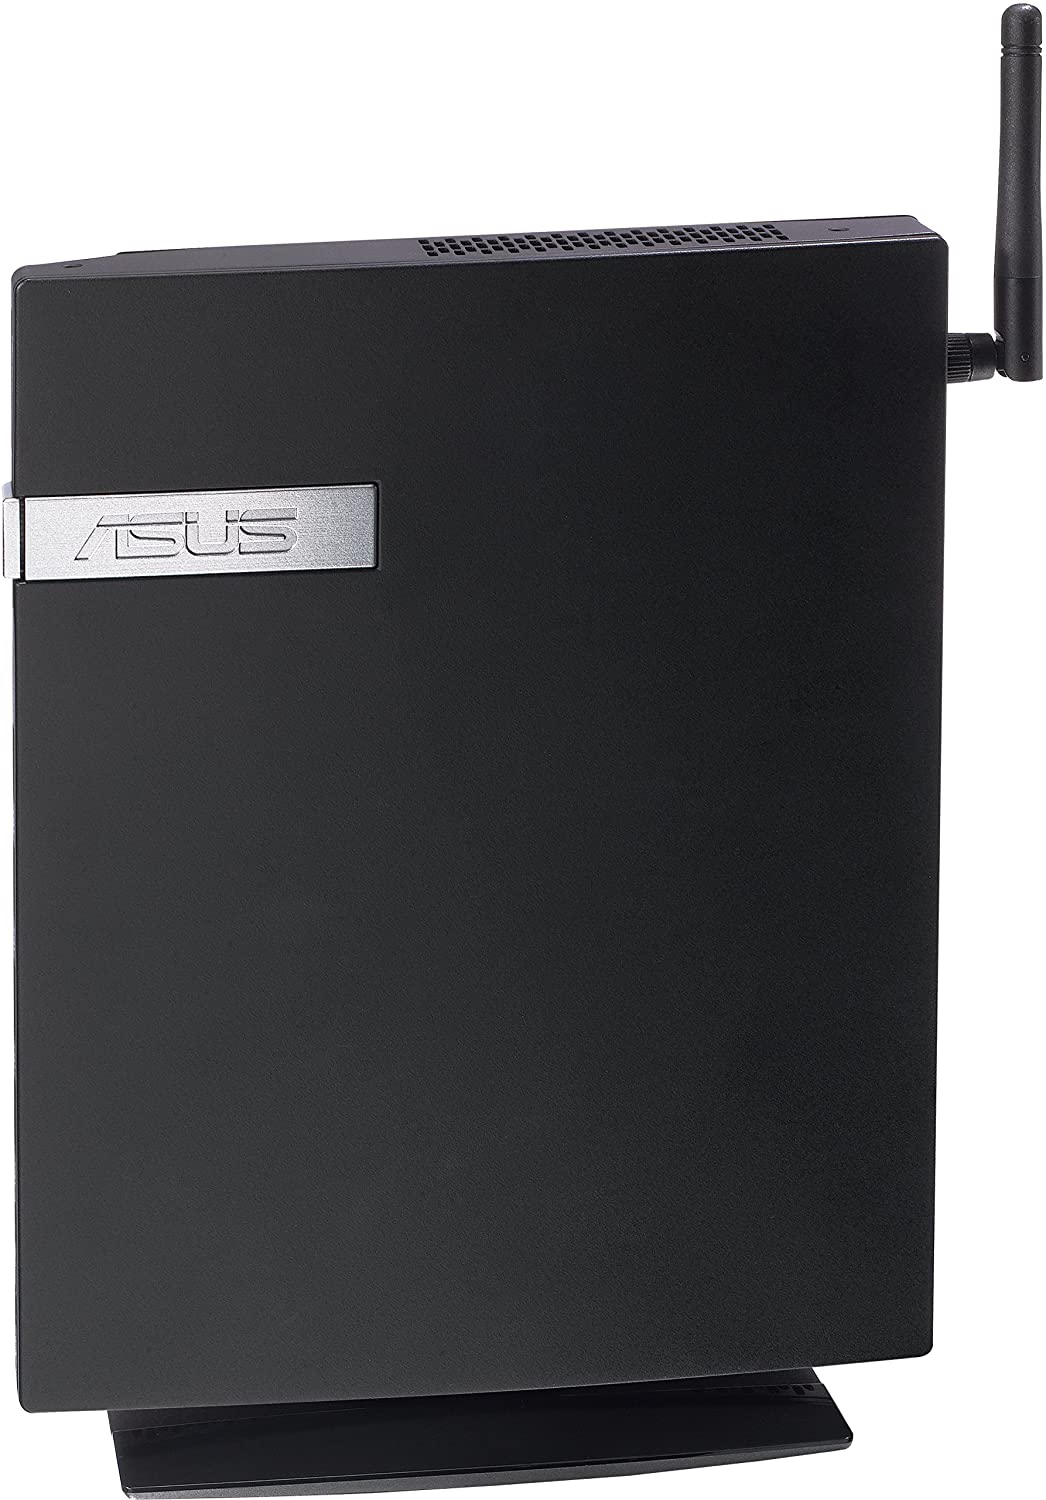 Asus E410 Mini PC USDT